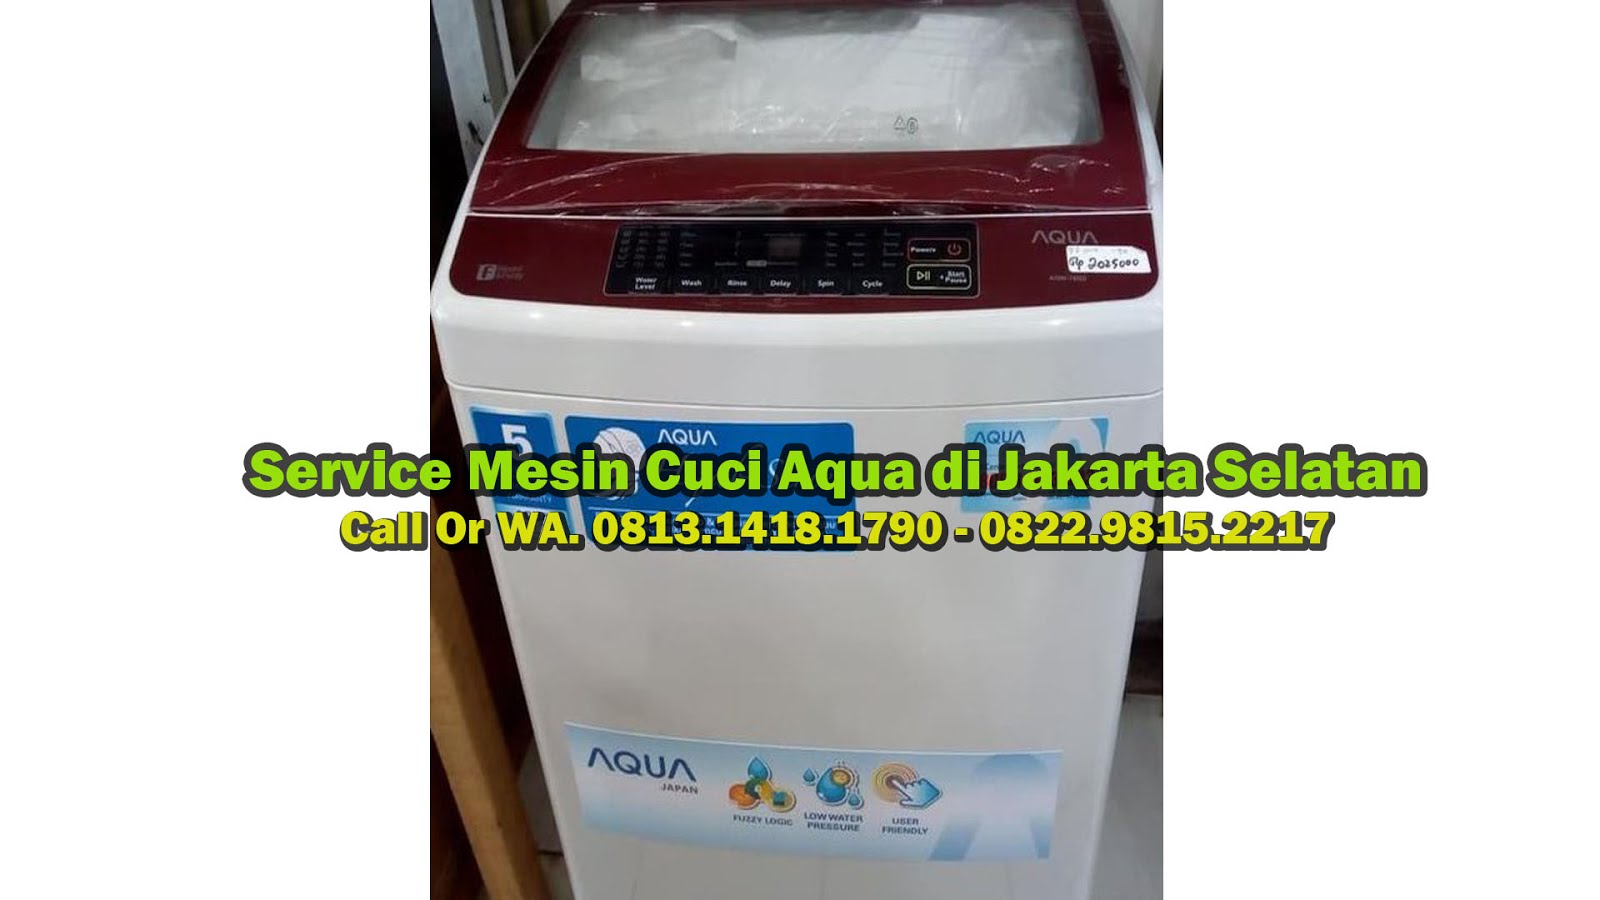 Service Mesin Cuci Aqua di Jakarta Selatan